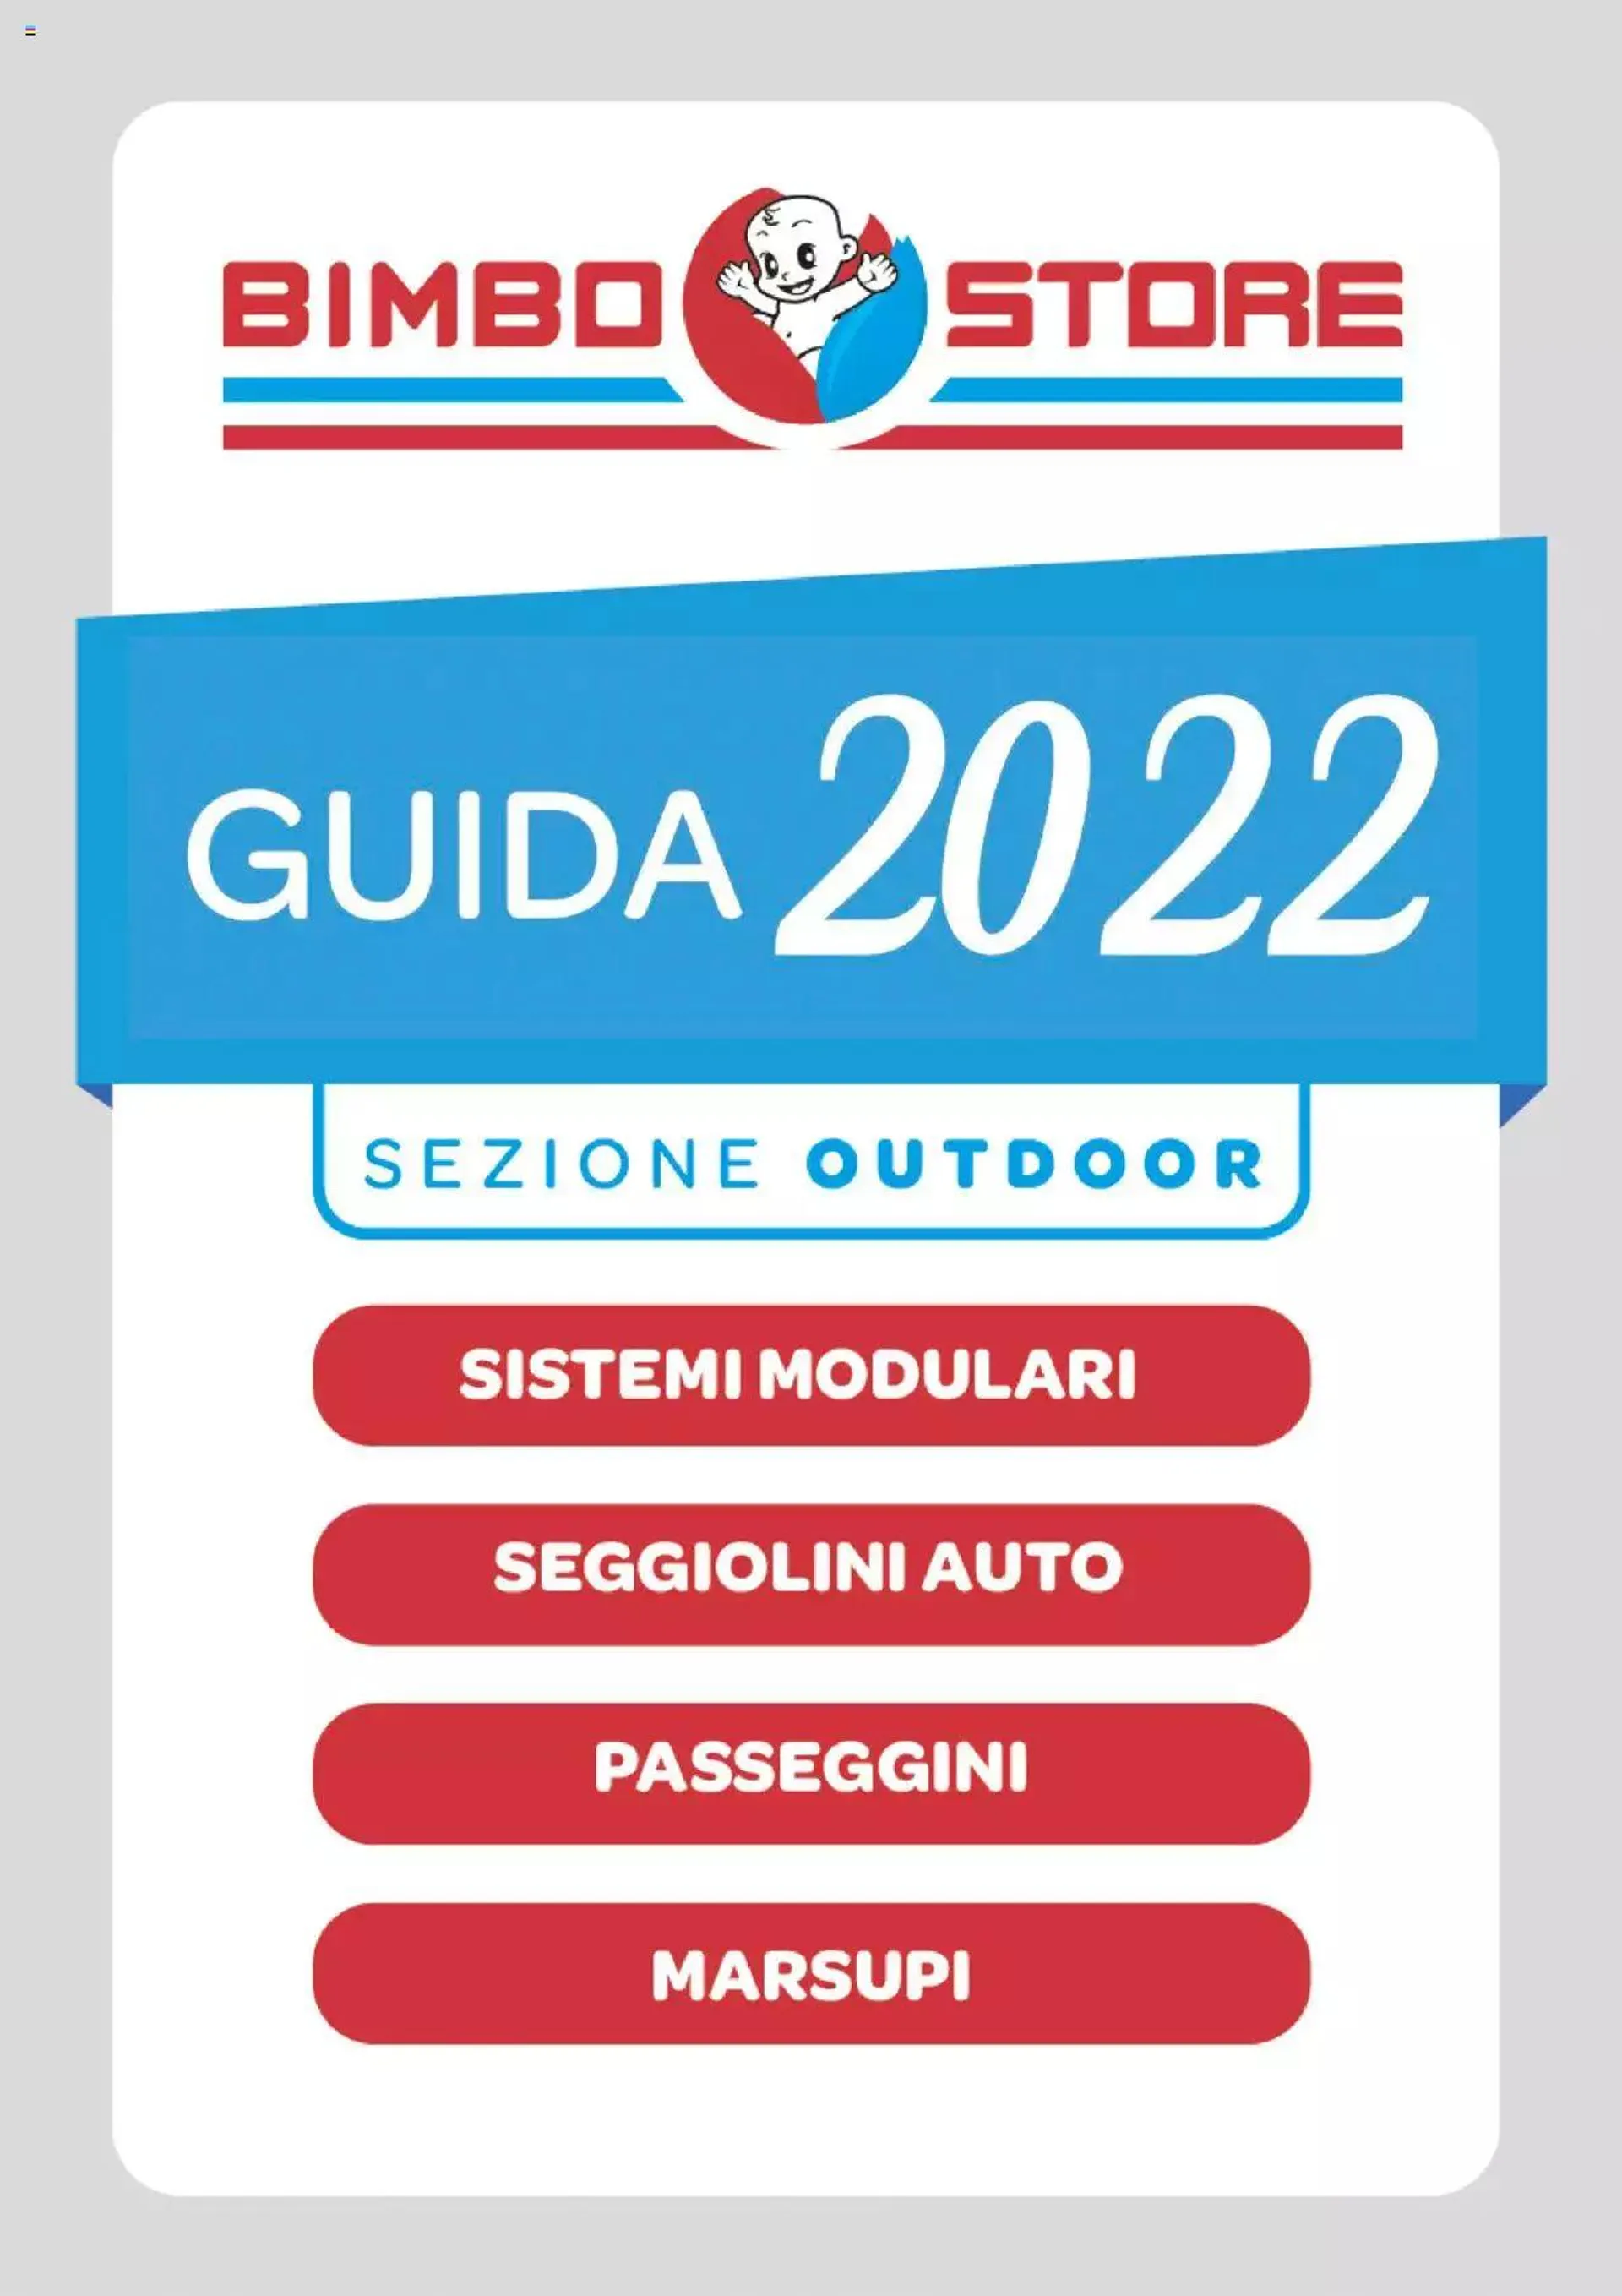 Bimbo store - Catalogo Guida 2022 da 2 giugno a 31 dicembre di 2022 - Pagina del volantino 1